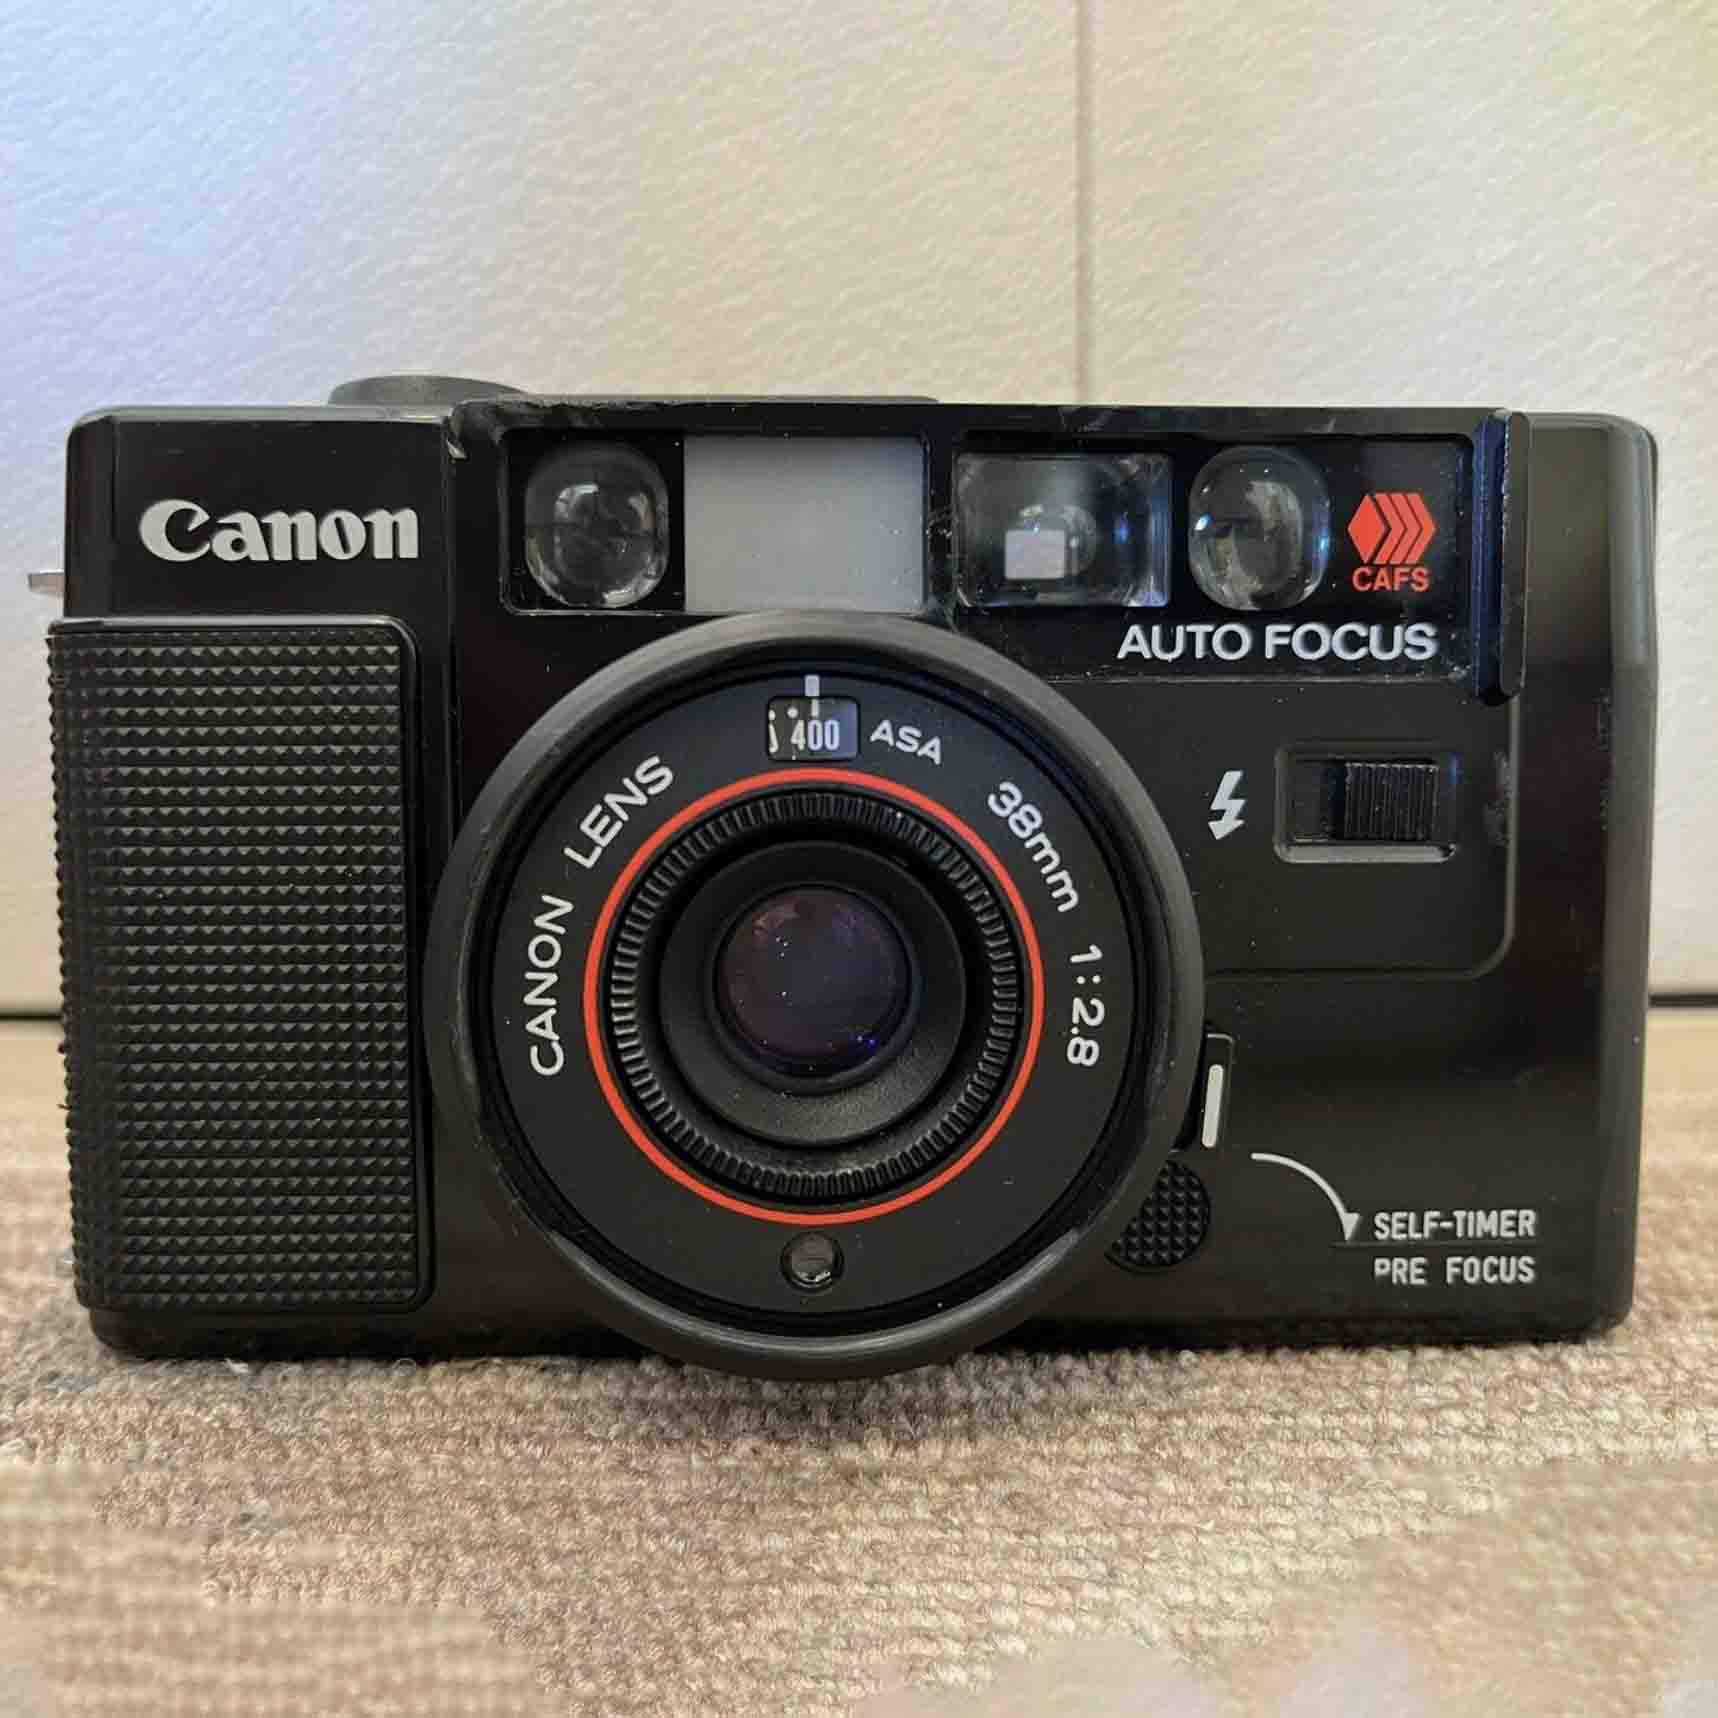 Black Canon camera